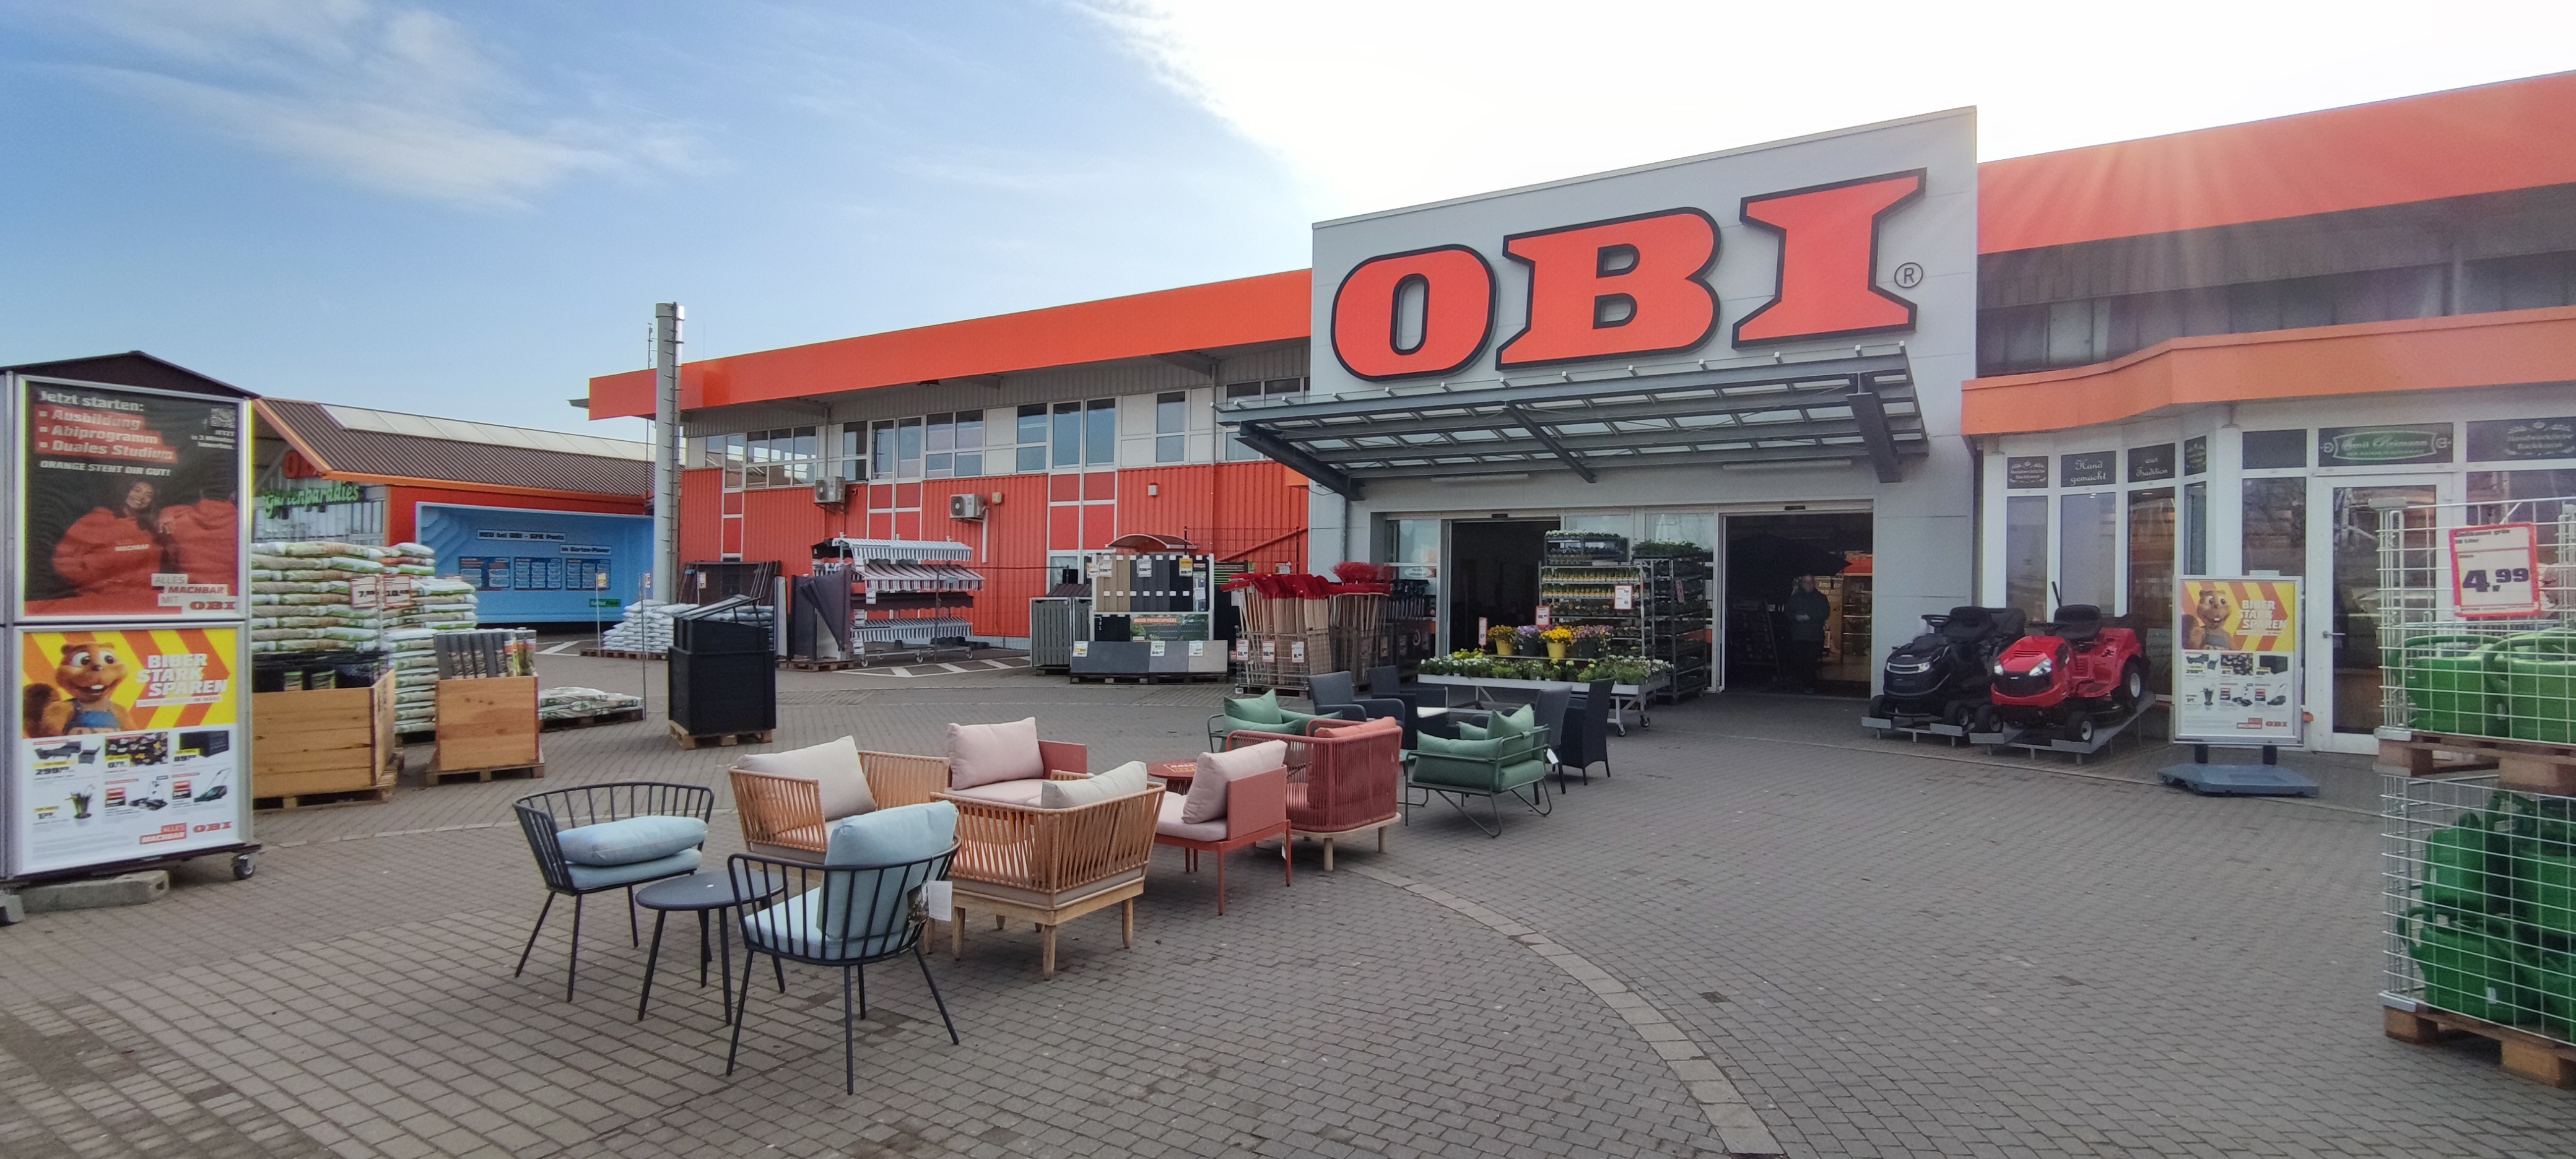 OBI Markt Bannewitz bei Dresden, An der Zschauke 2 in Bannewitz